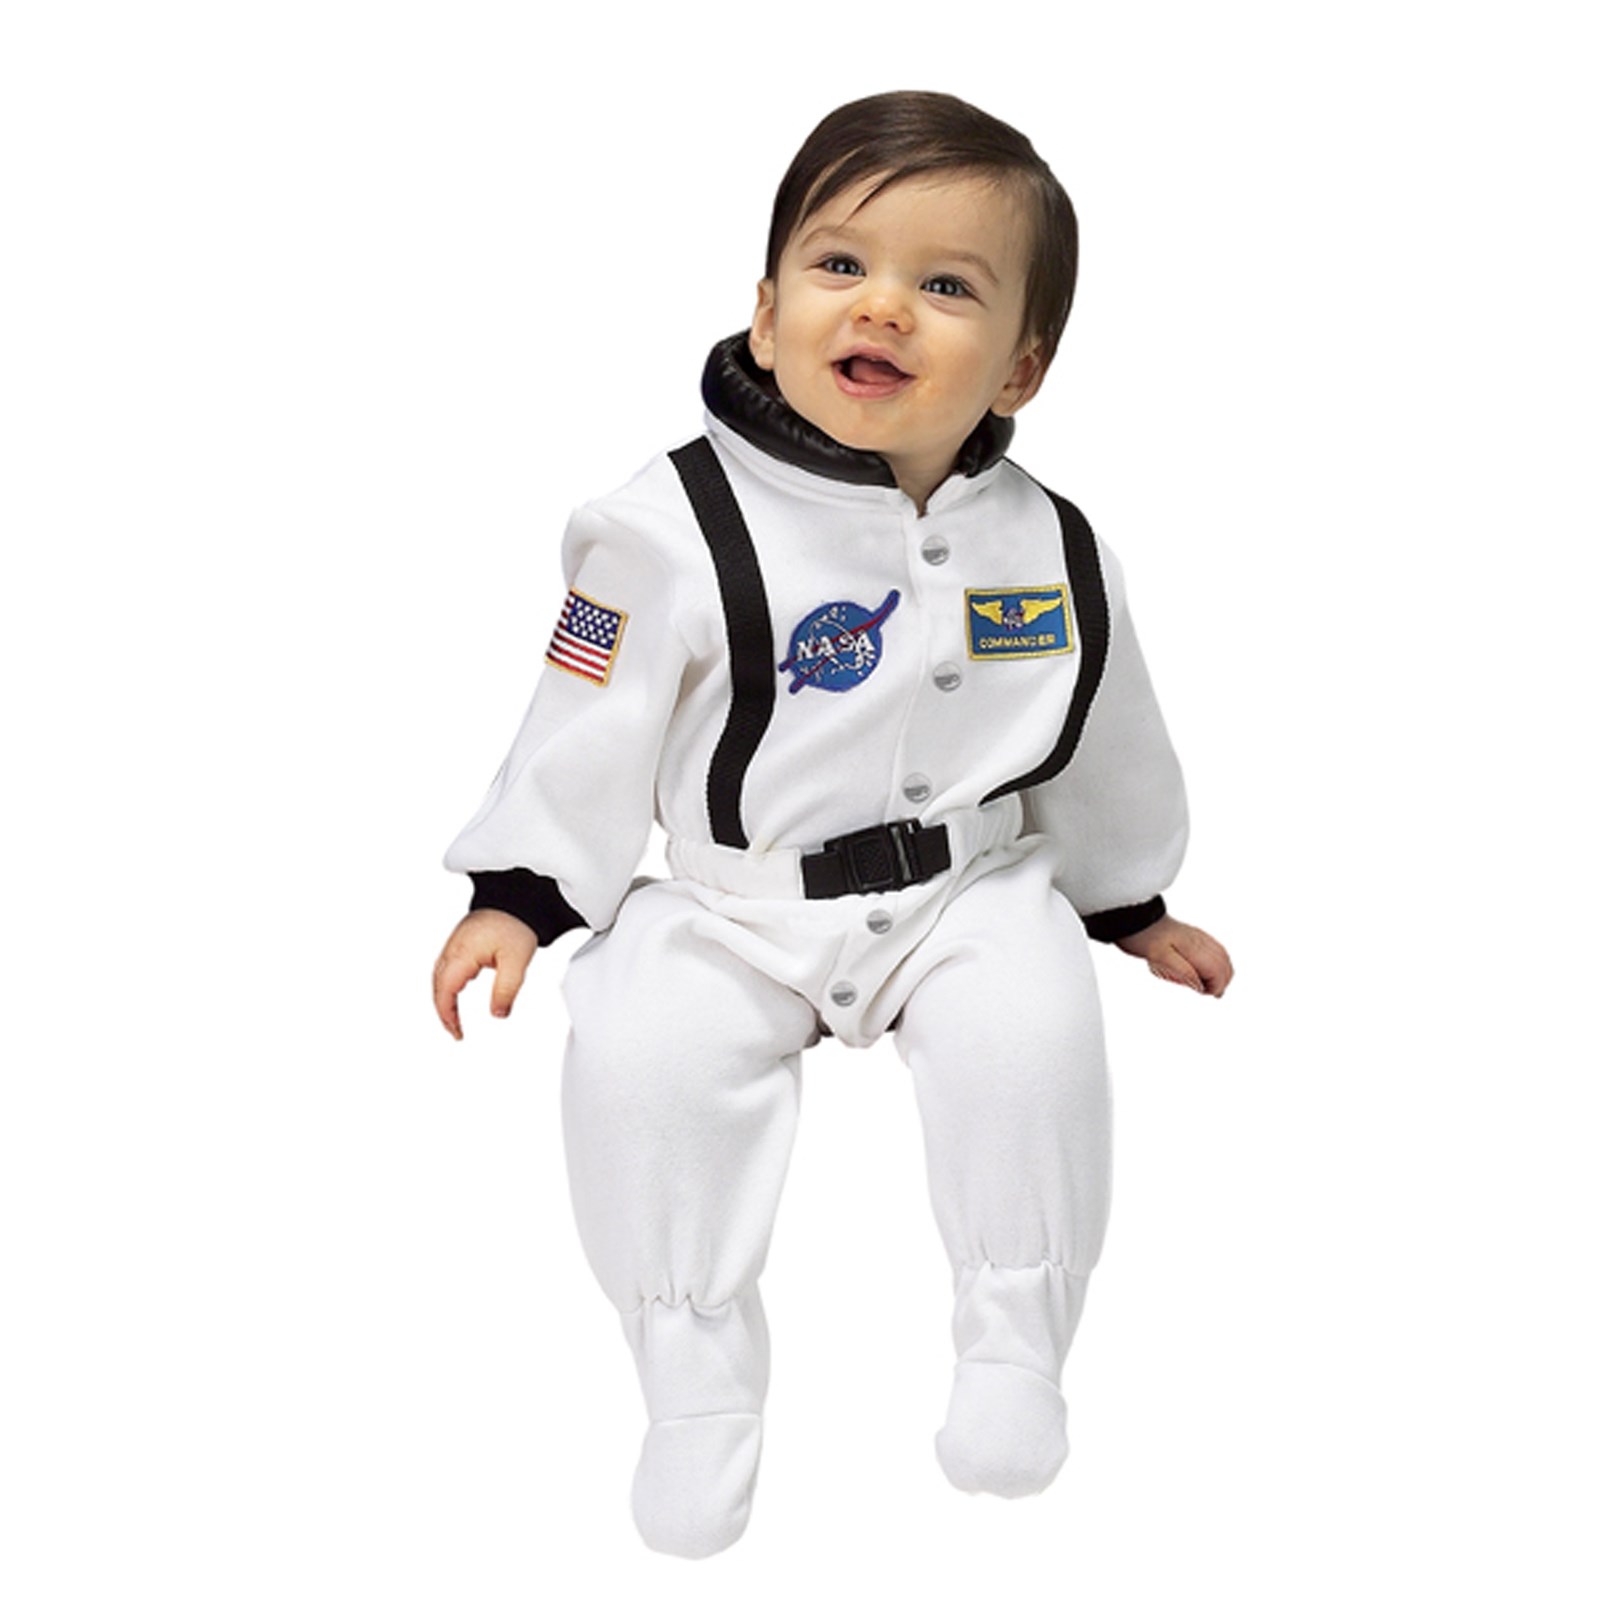 NASA Jr. Astronaut Suit White Infant Costume